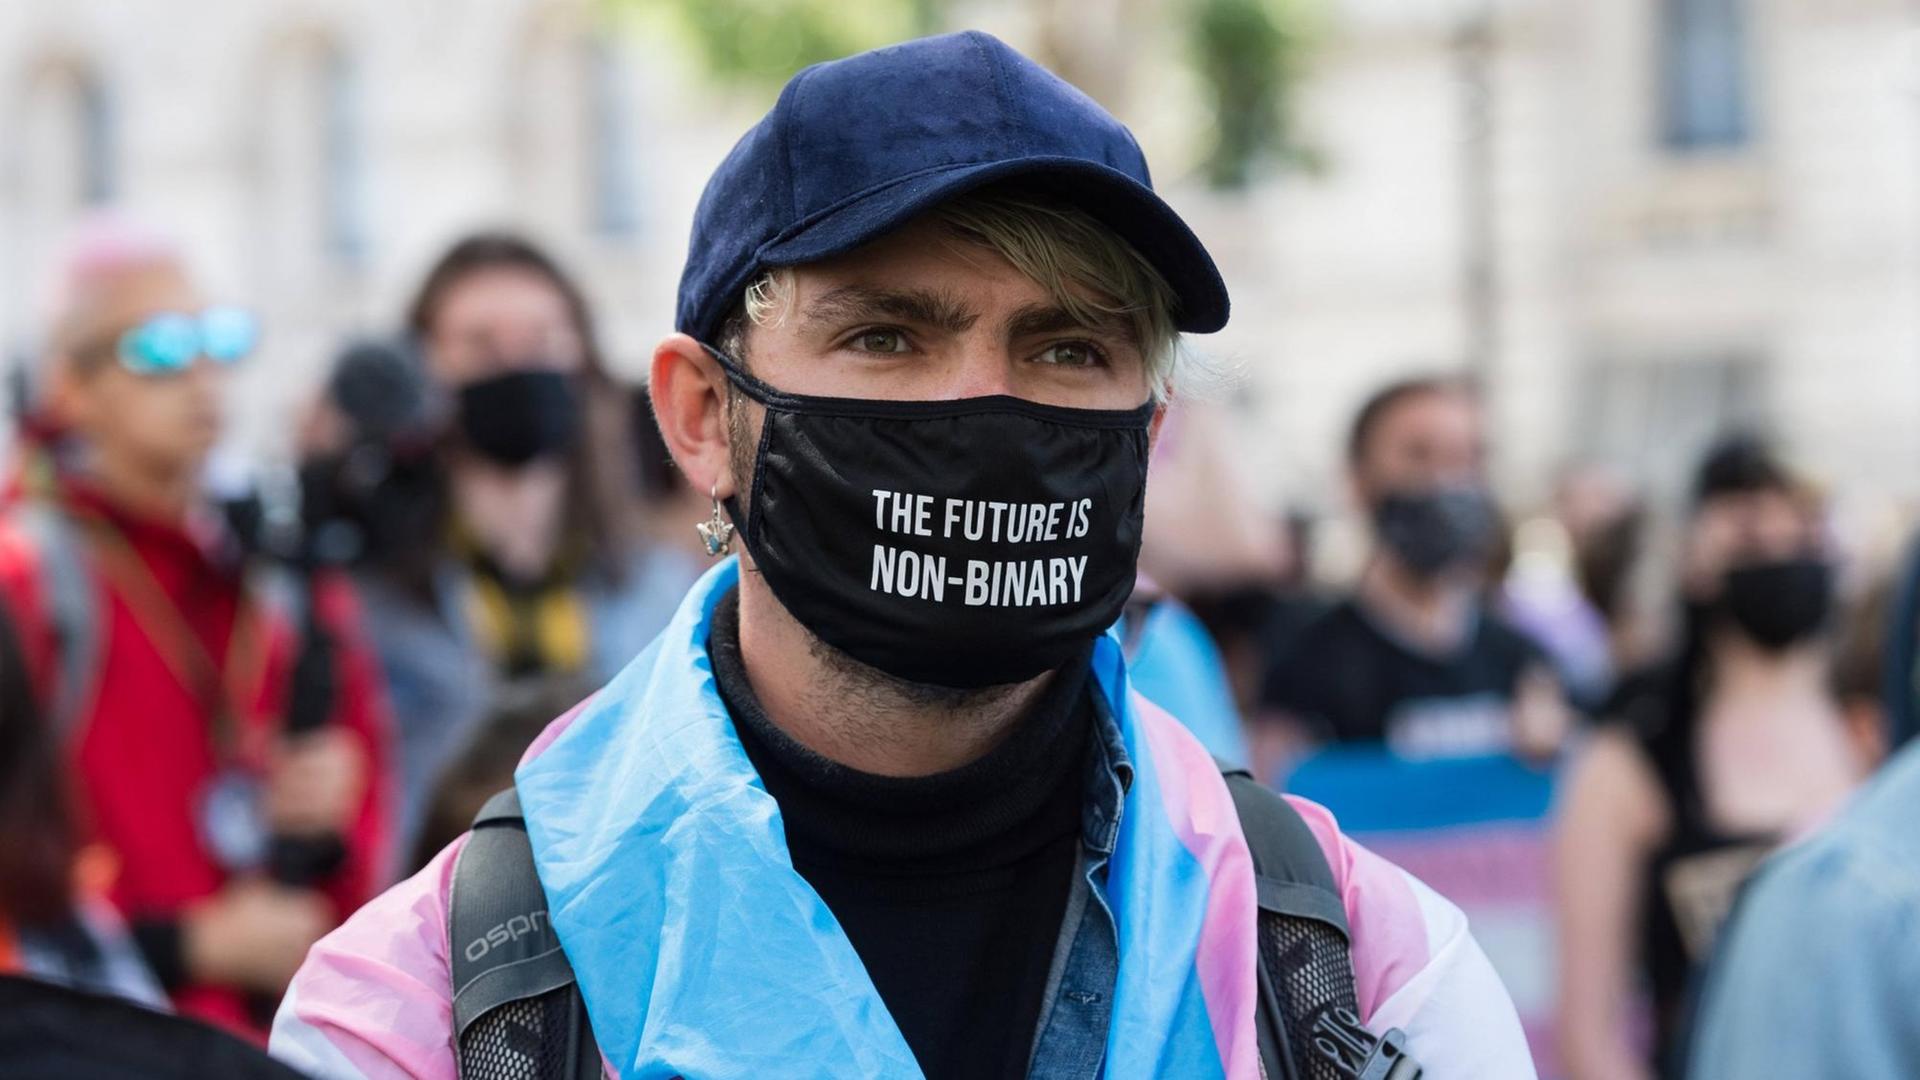 Demonstration für Transrechte in London. Ein junger Mensch trägt einen schwarzen Mundschutz mit der Aufschrift. "The future in non-binary".